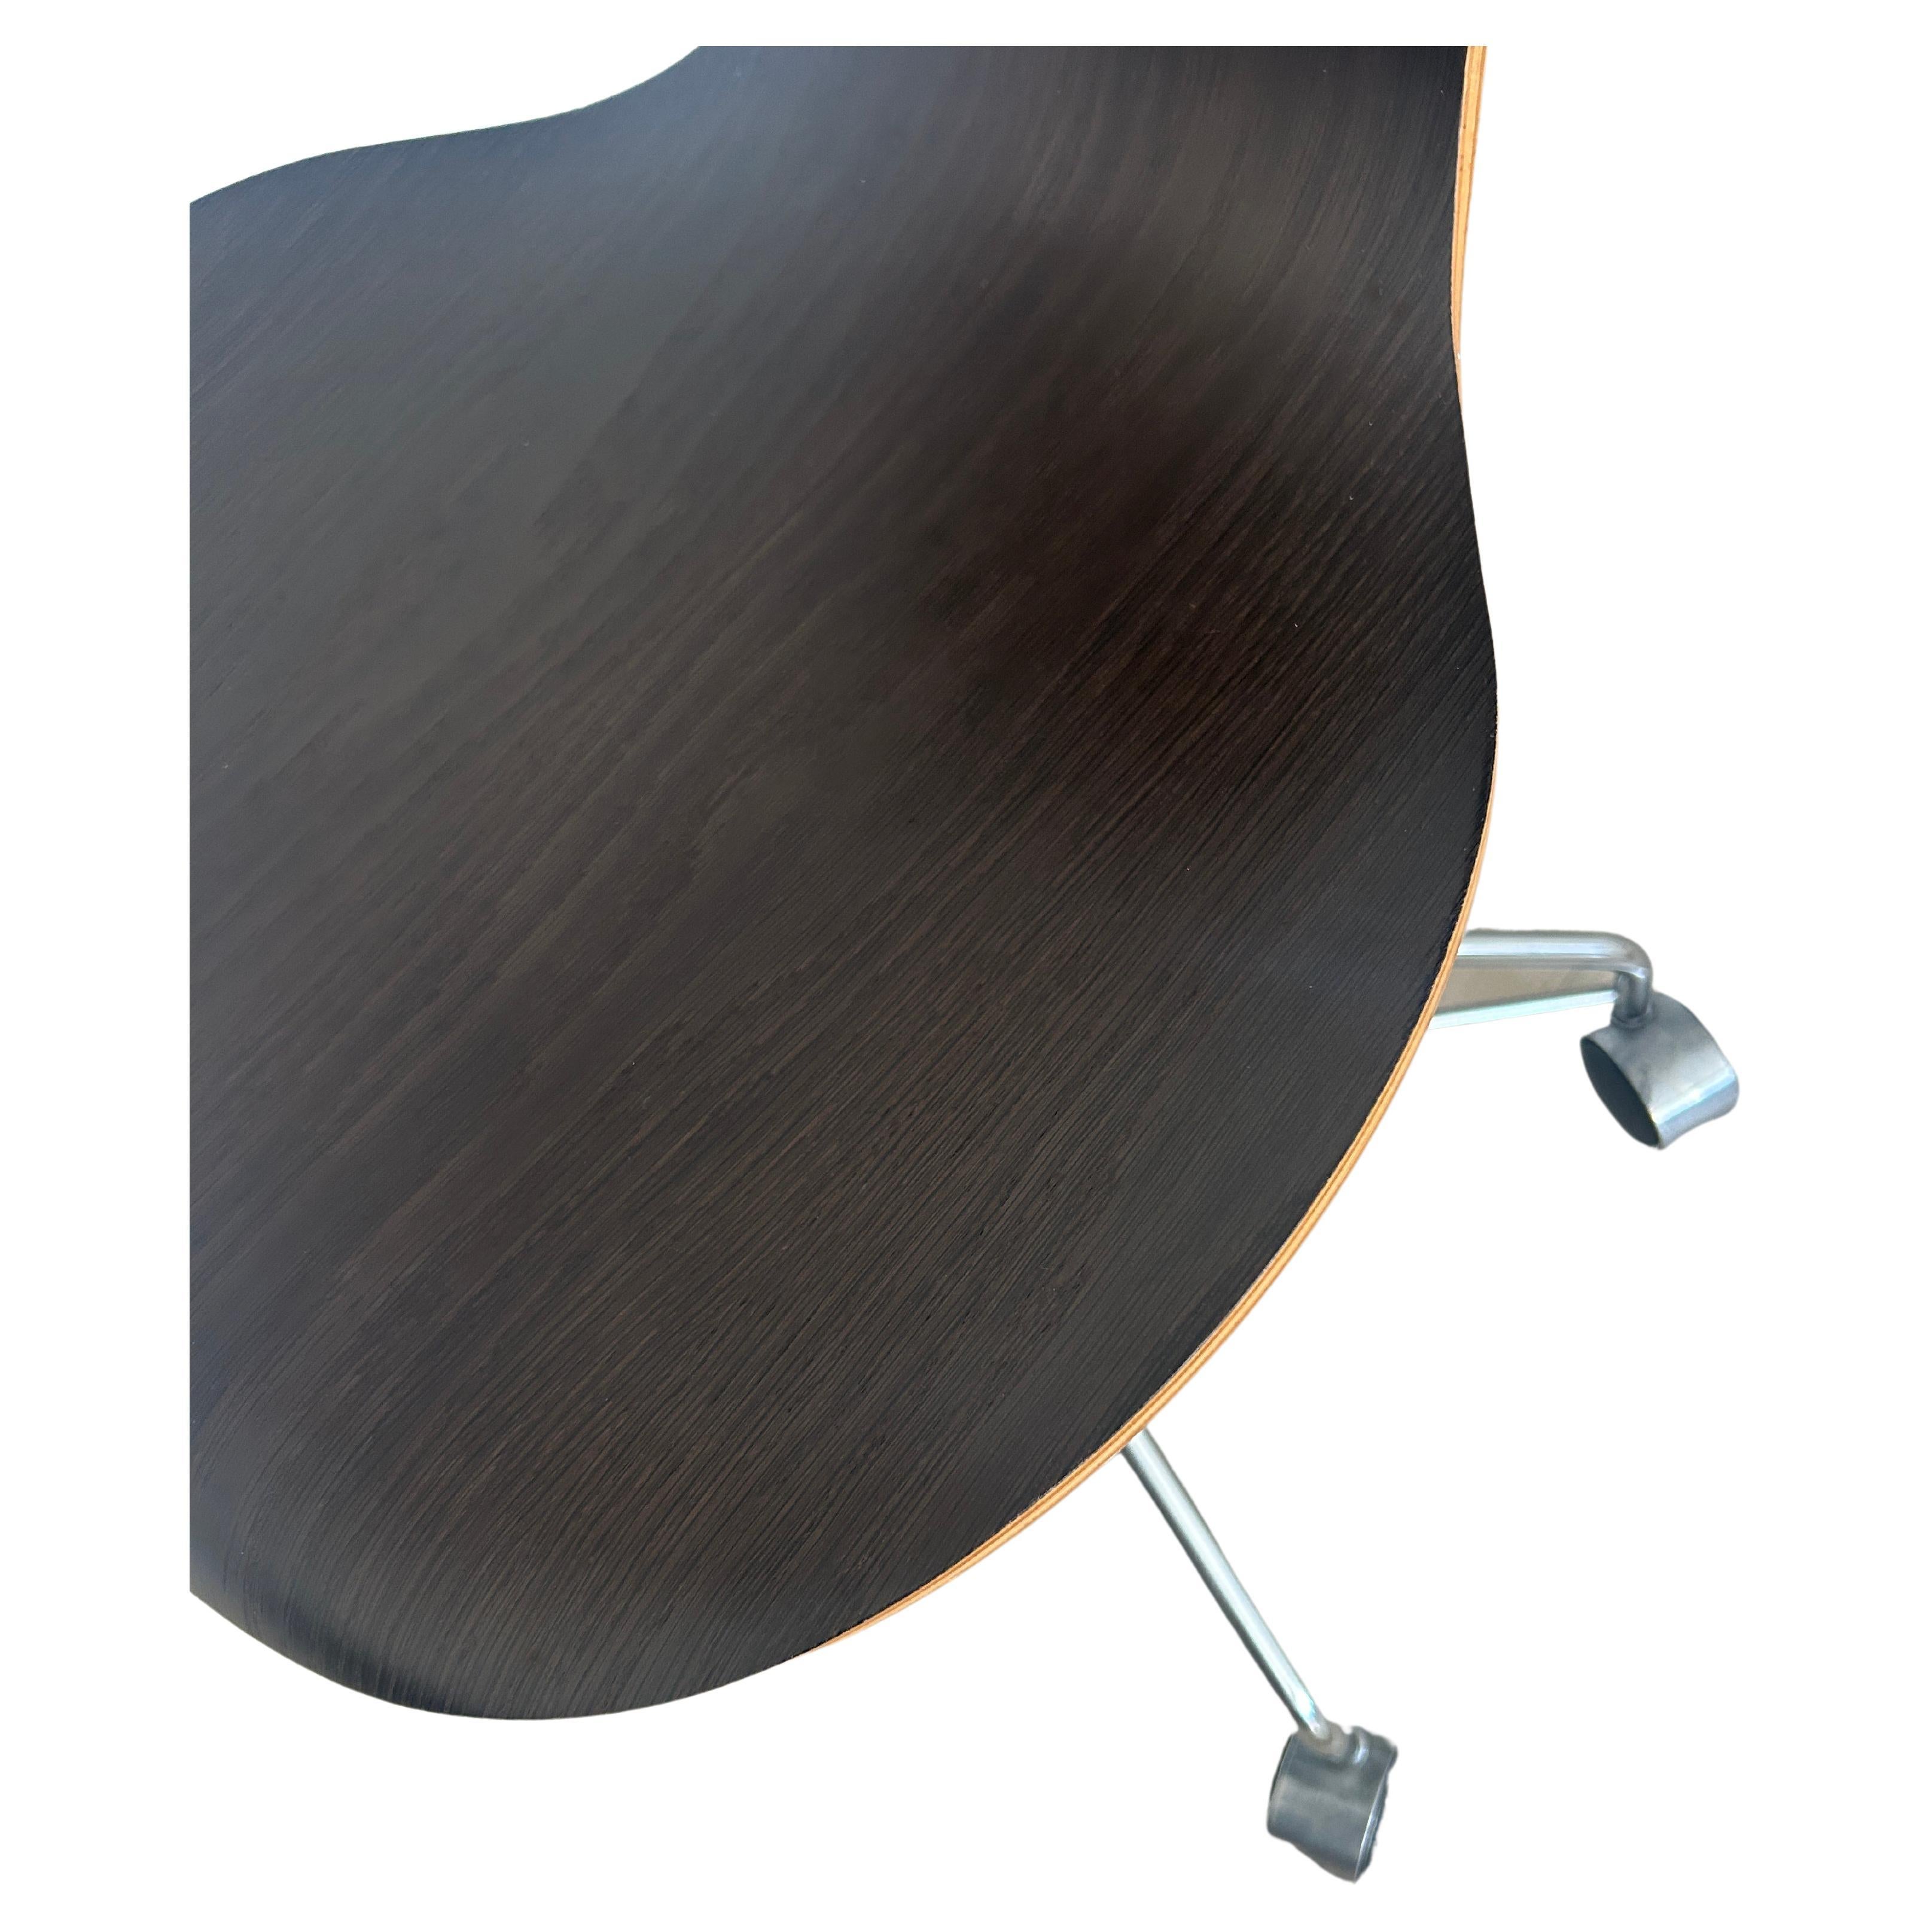 Woodwork Arne Jacobsen for Fritz Hansen Dark Brown Oak Series 7 Desk Task Office Chair For Sale